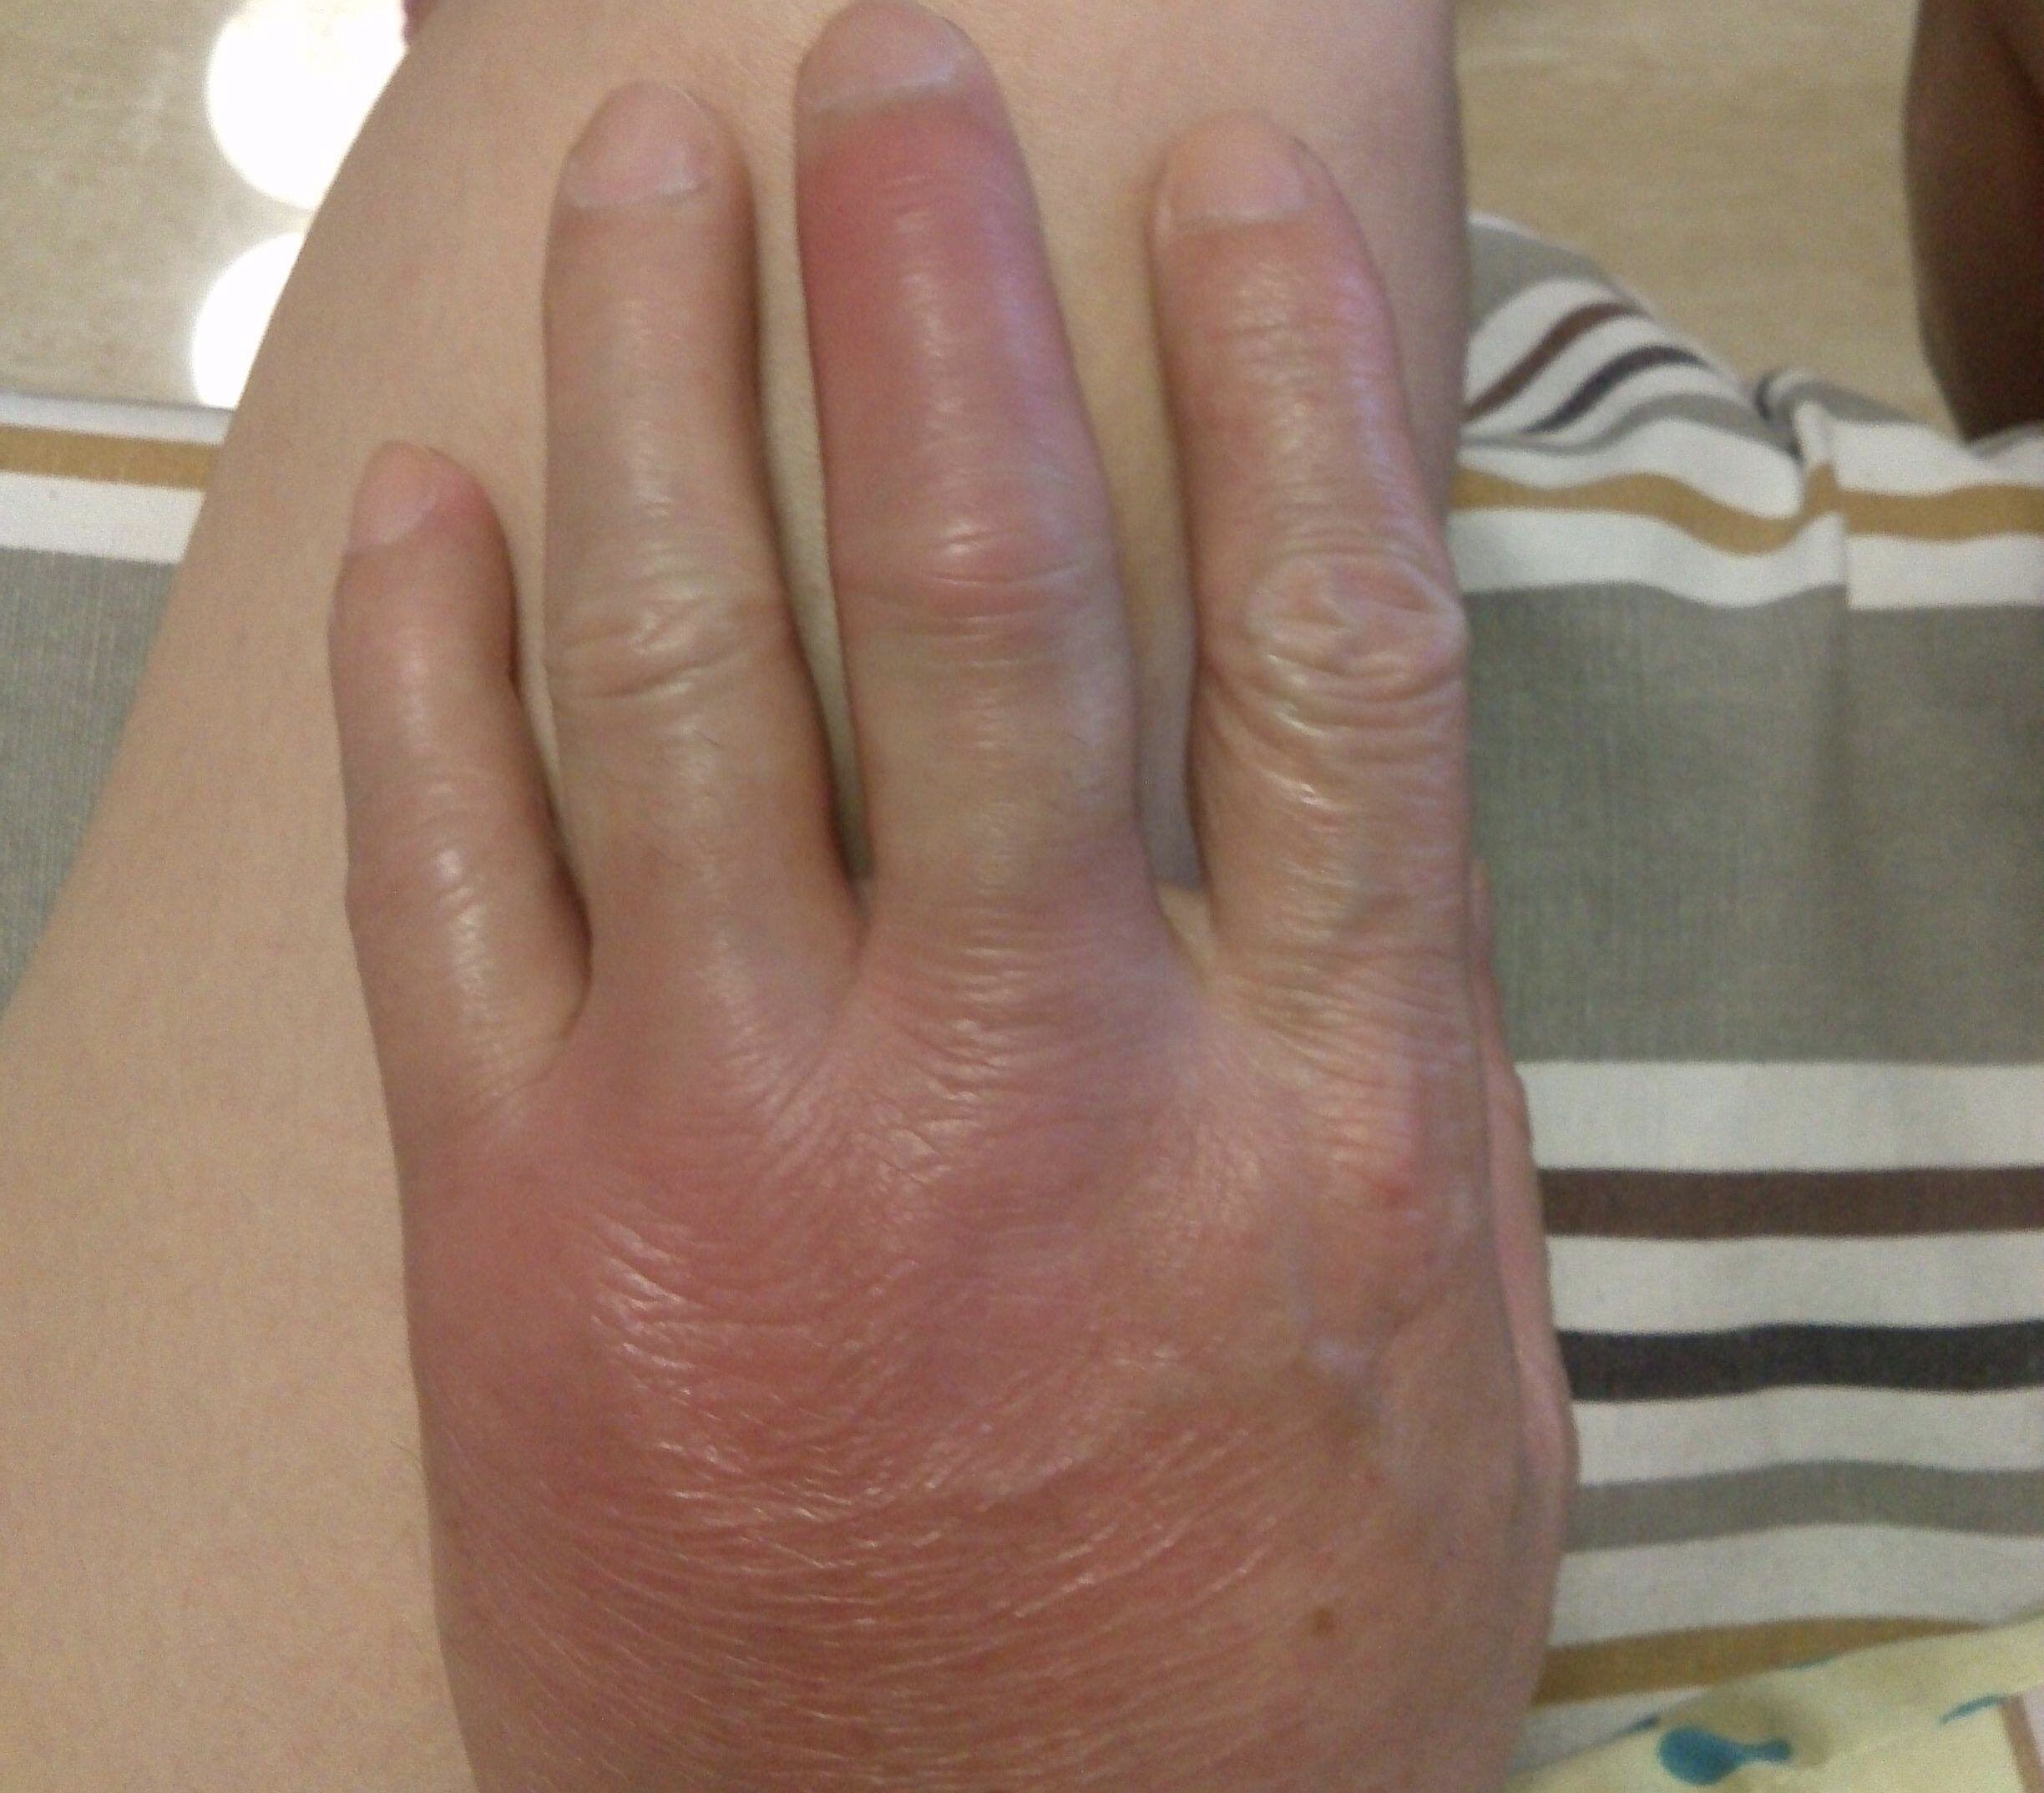 该阶段的痛风症状主要表现为脚踝关节或脚指,手臂,手指关节处疼痛